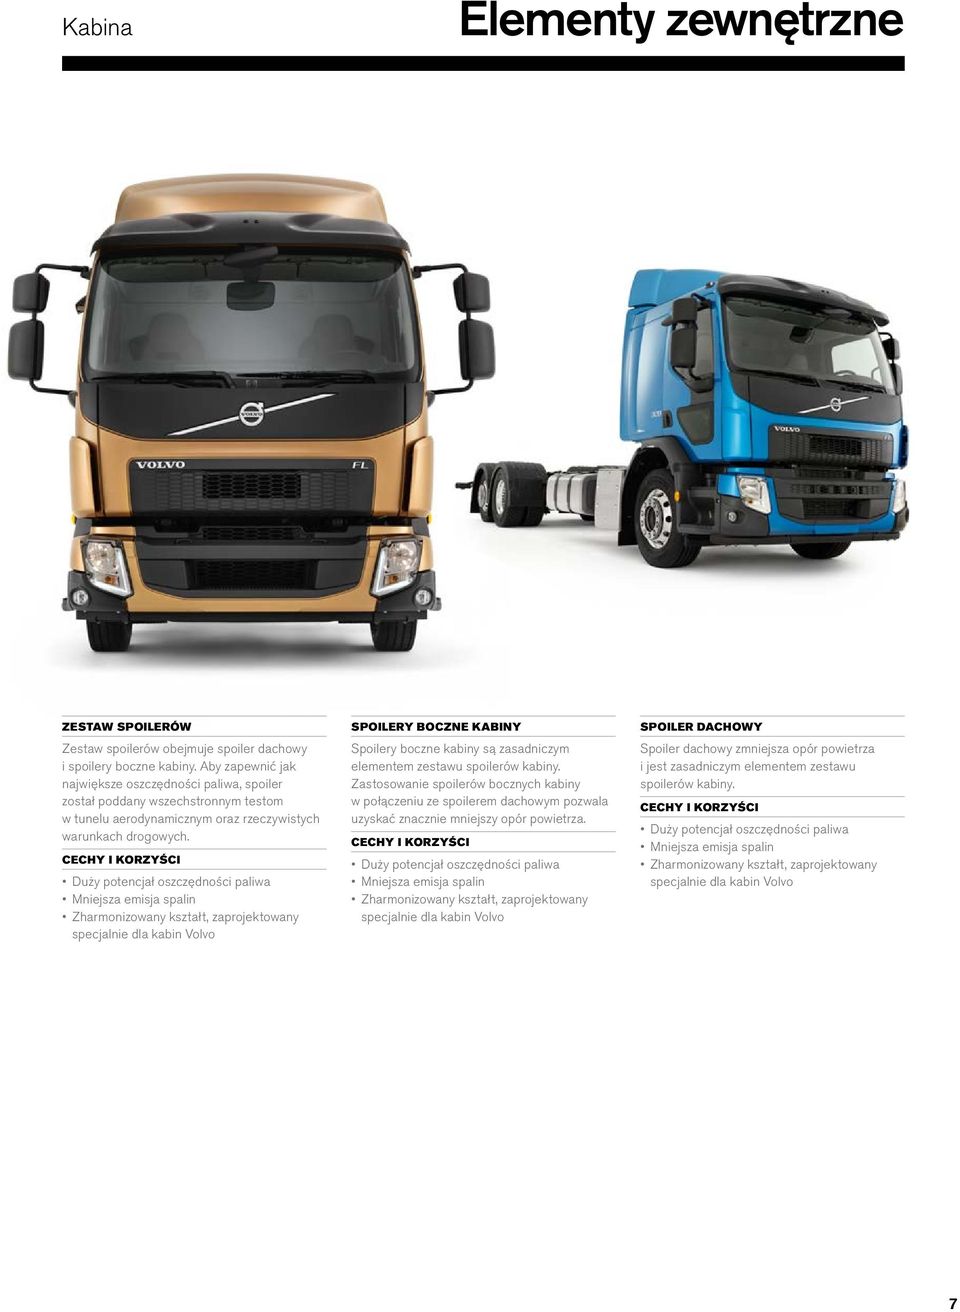 Duży potencjał oszczędności paliwa Mniejsza emisja spalin Zharmonizowany kształt, zaprojektowany specjalnie dla kabin Volvo SPOILERY BOCZNE KABINY Spoilery boczne kabiny są zasadniczym elementem